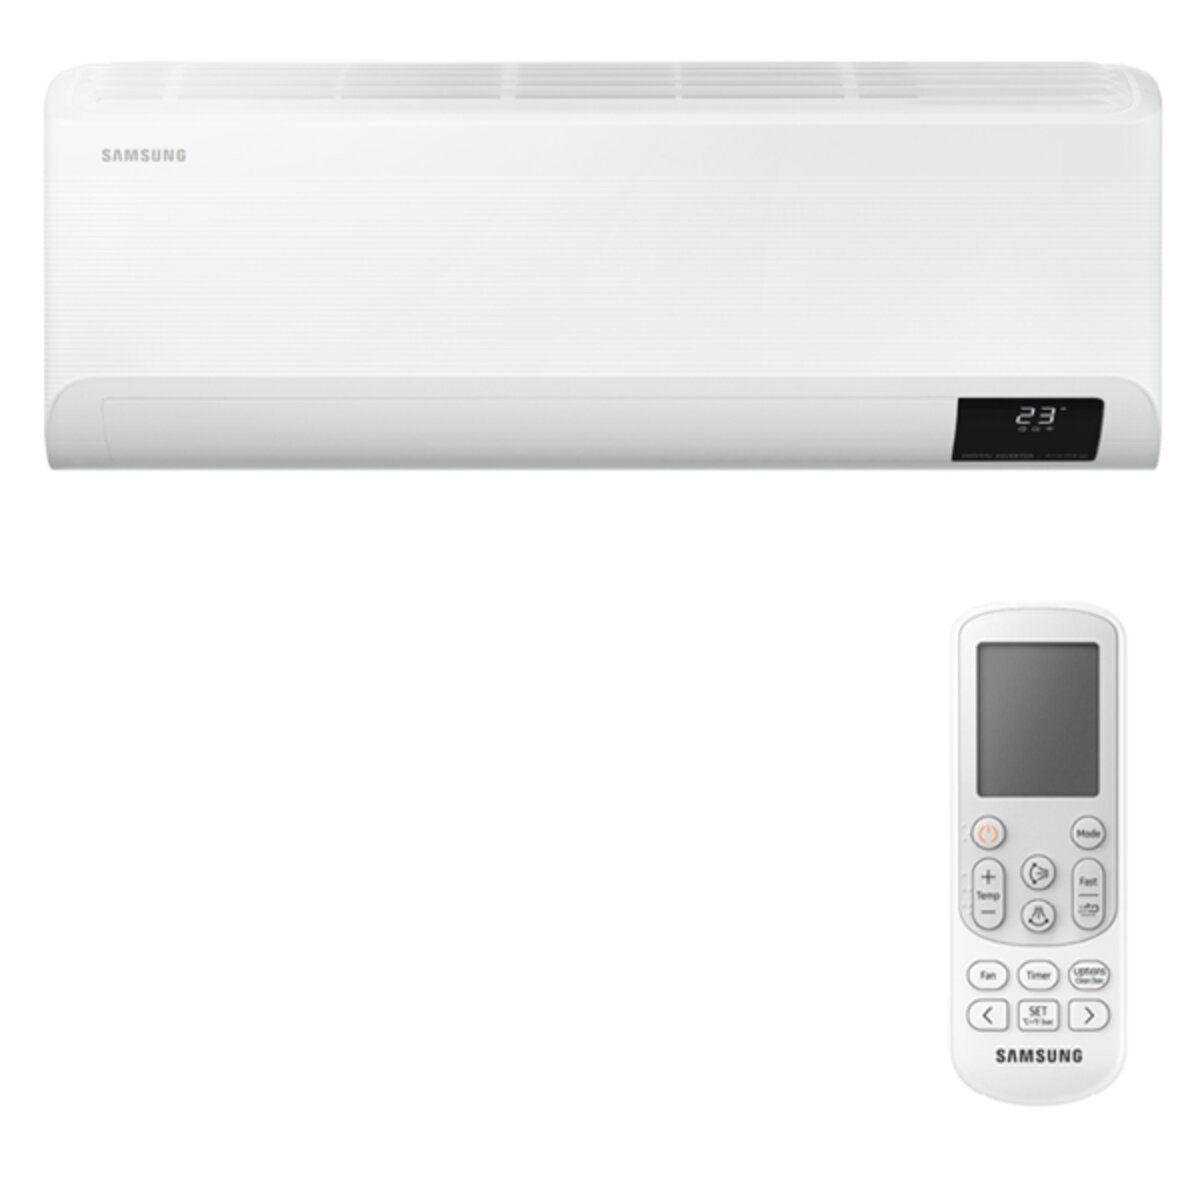 Samsung Cebu WLAN Klimaanlage Penta Split 7000 + 7000 + 7000 + 7000 + 12000 BTU Wechselrichter A++ WLAN Außengerät 10,0 kW